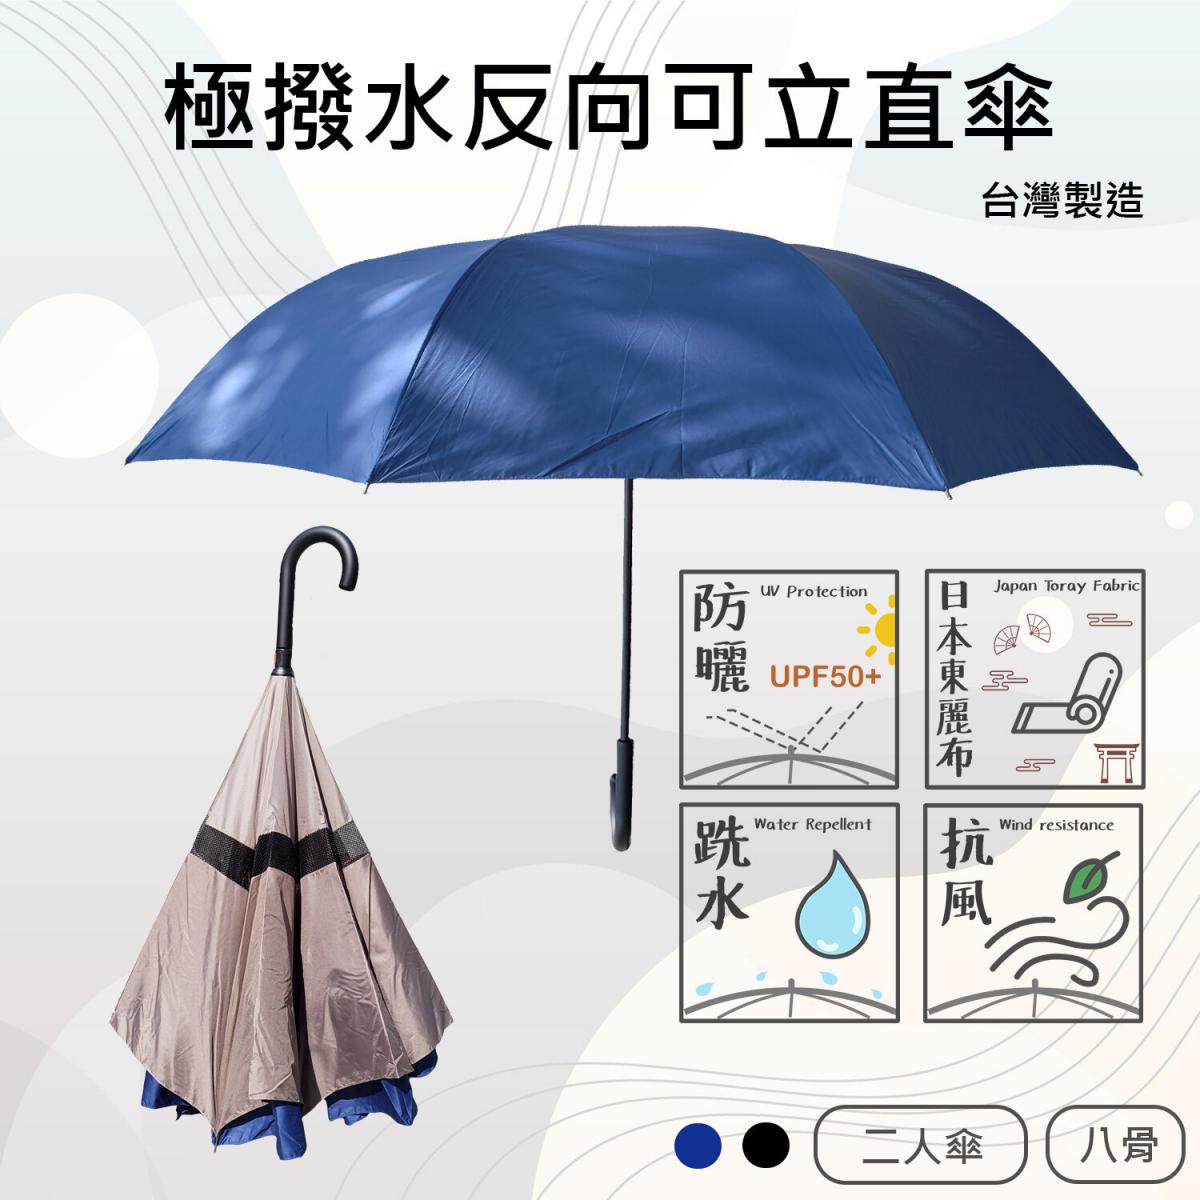 F-seasons | 極致撥水反向直傘雨傘雨遮長遮長傘直遮直傘自動遮自動傘大 